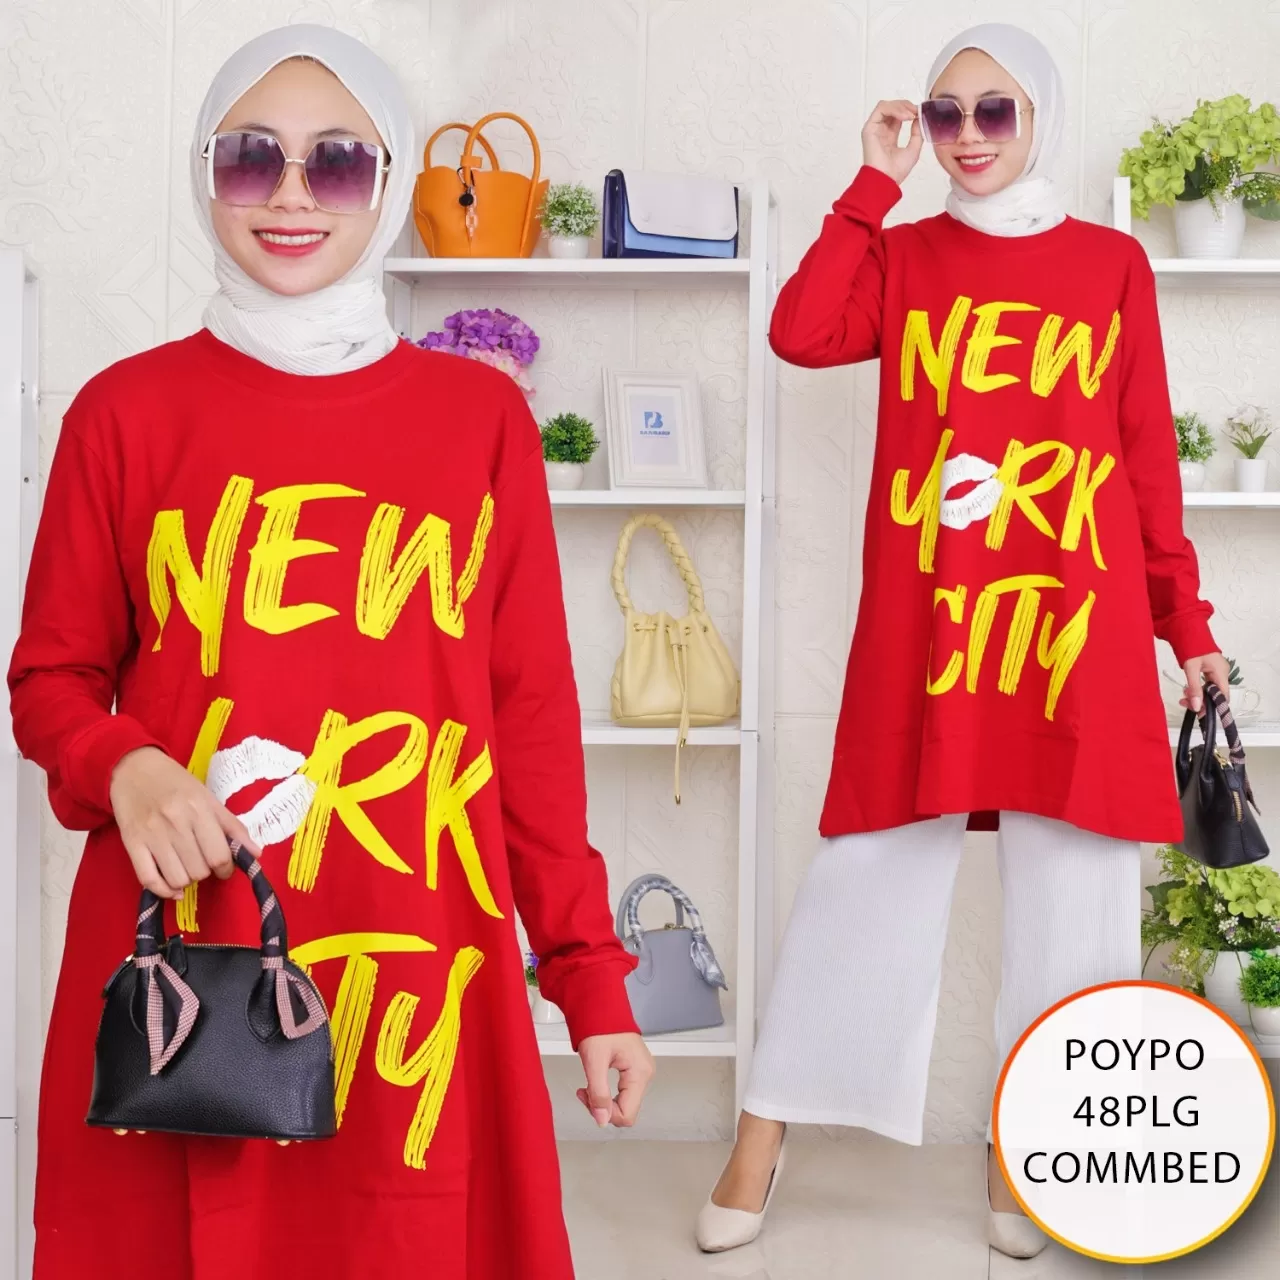 Tunik Kaos Viral Tangan panjang Cotton Combed 20s Premium Poypo 48PLG Commbed 20s - bajubaru.id, Belanja Online di bajubaru.id saja 